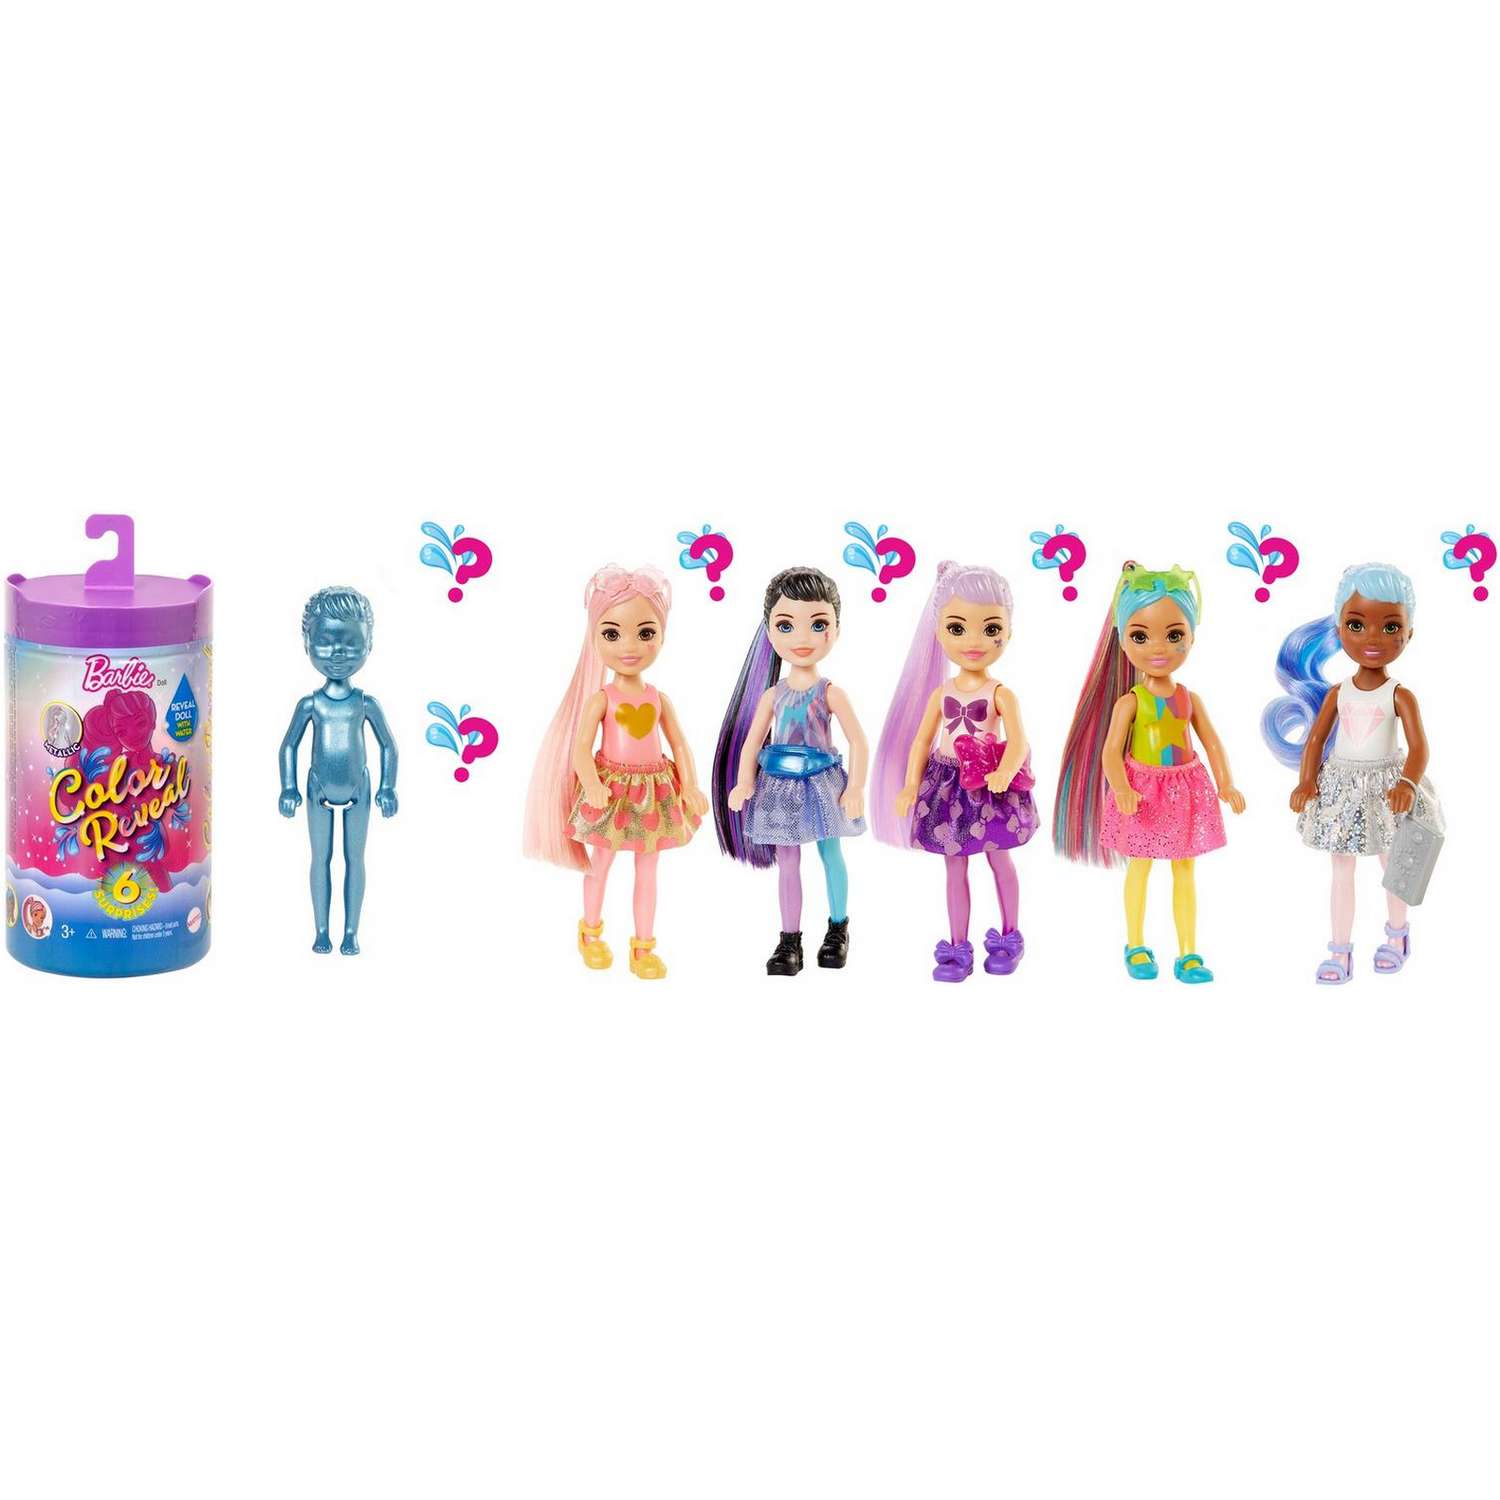 Набор Barbie Челси В1 кукла +аксессуары в непрозрачной упаковке (Сюрприз) GWC59 GTT23 - фото 11